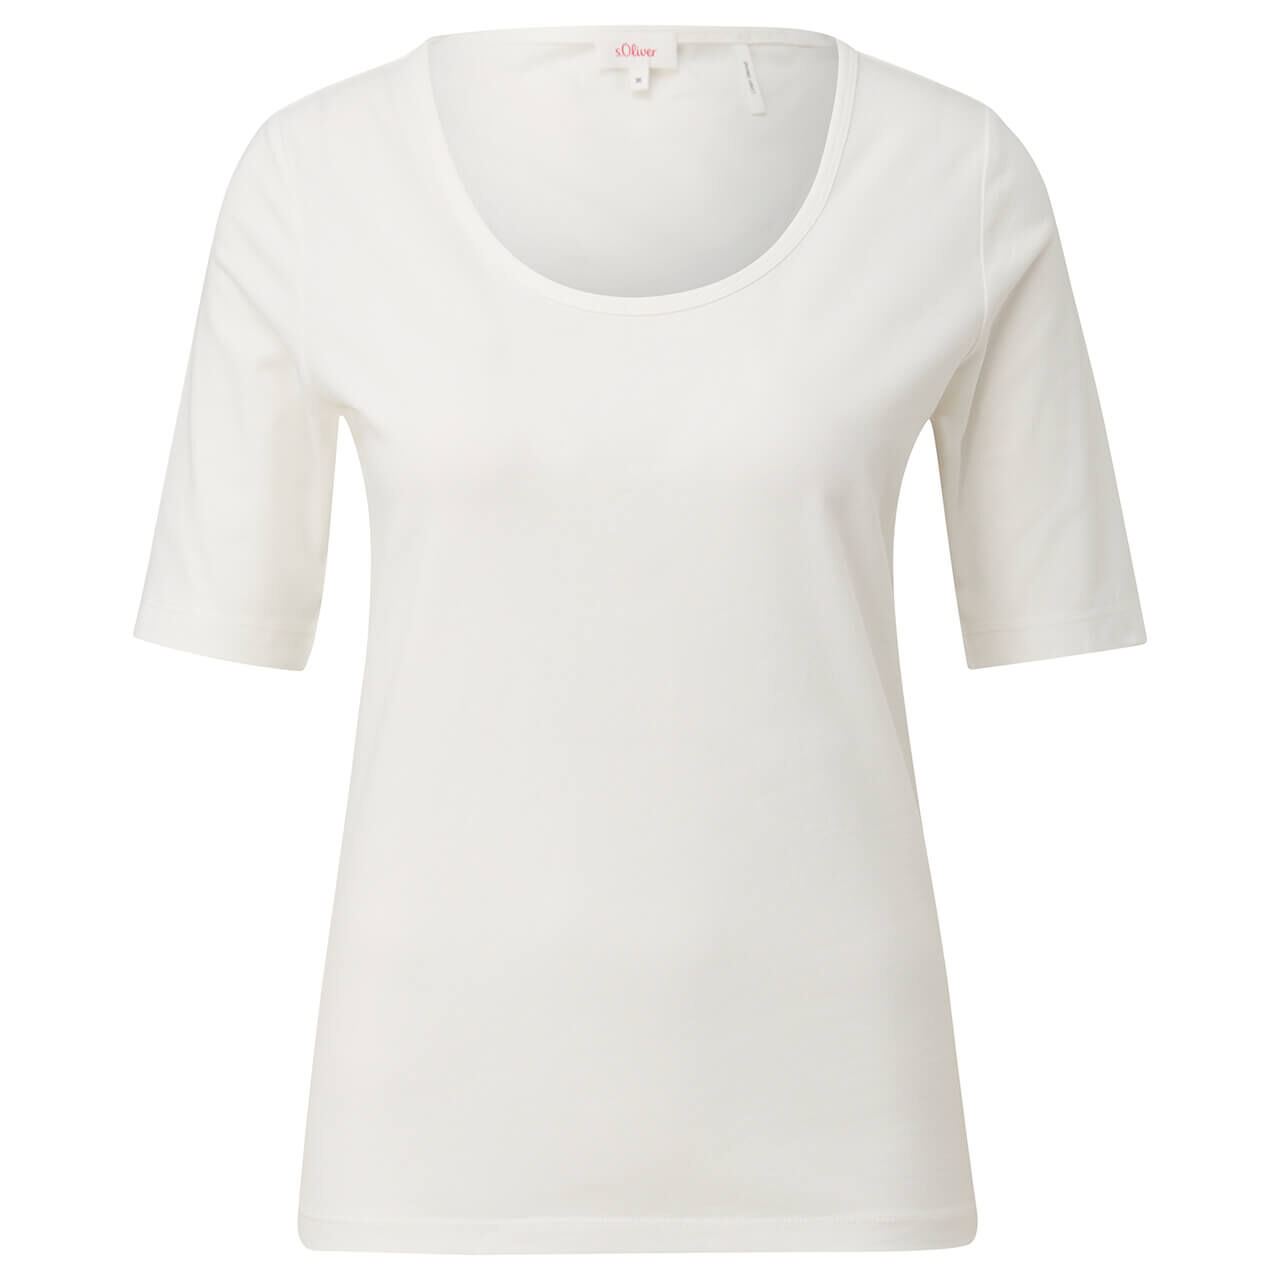 s.Oliver Damen T-Shirt creme white